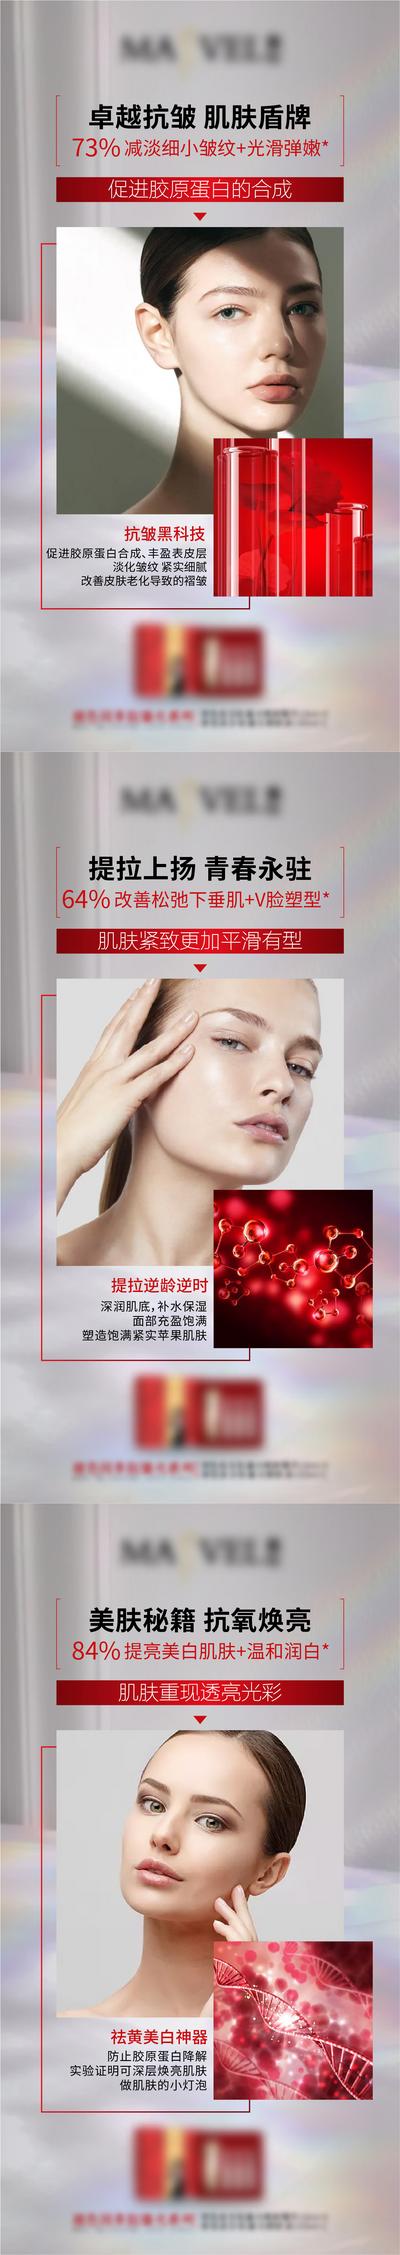 南门网 海报 微商 产品 护肤品 早安 宣传